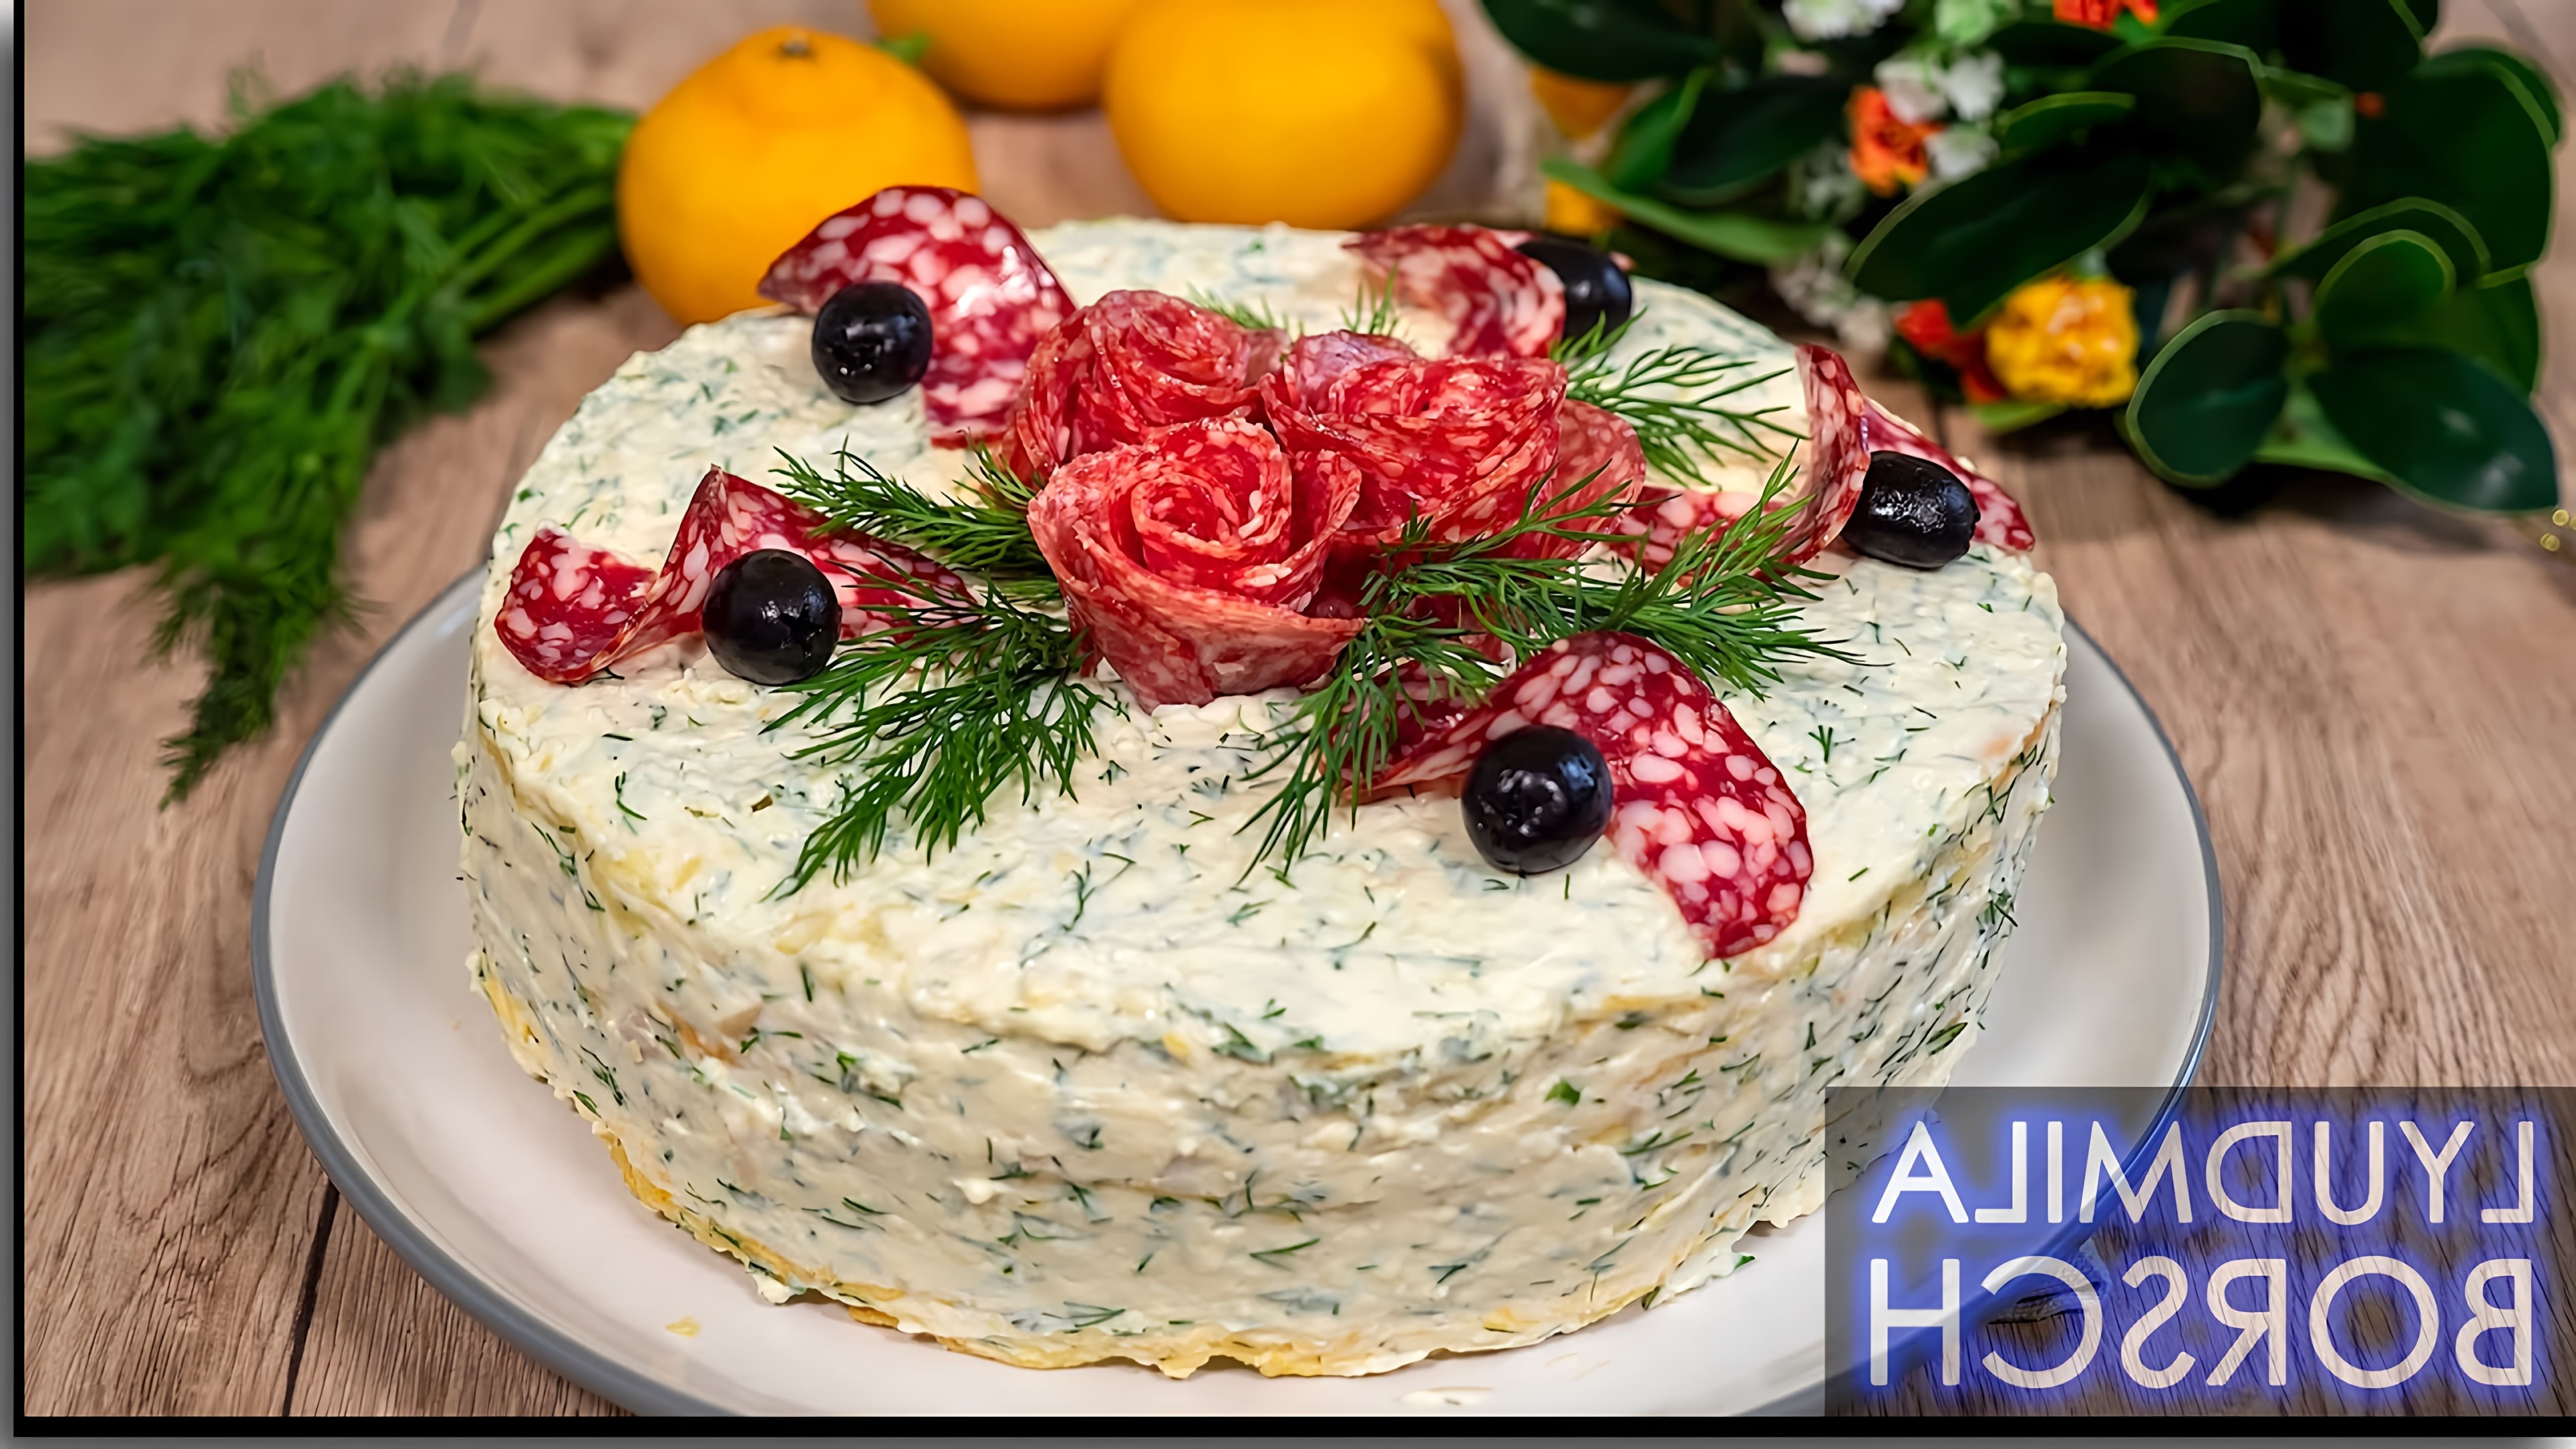 В этом видео демонстрируется рецепт закусочного торта "Наполеон", который можно приготовить на Новый год 2022